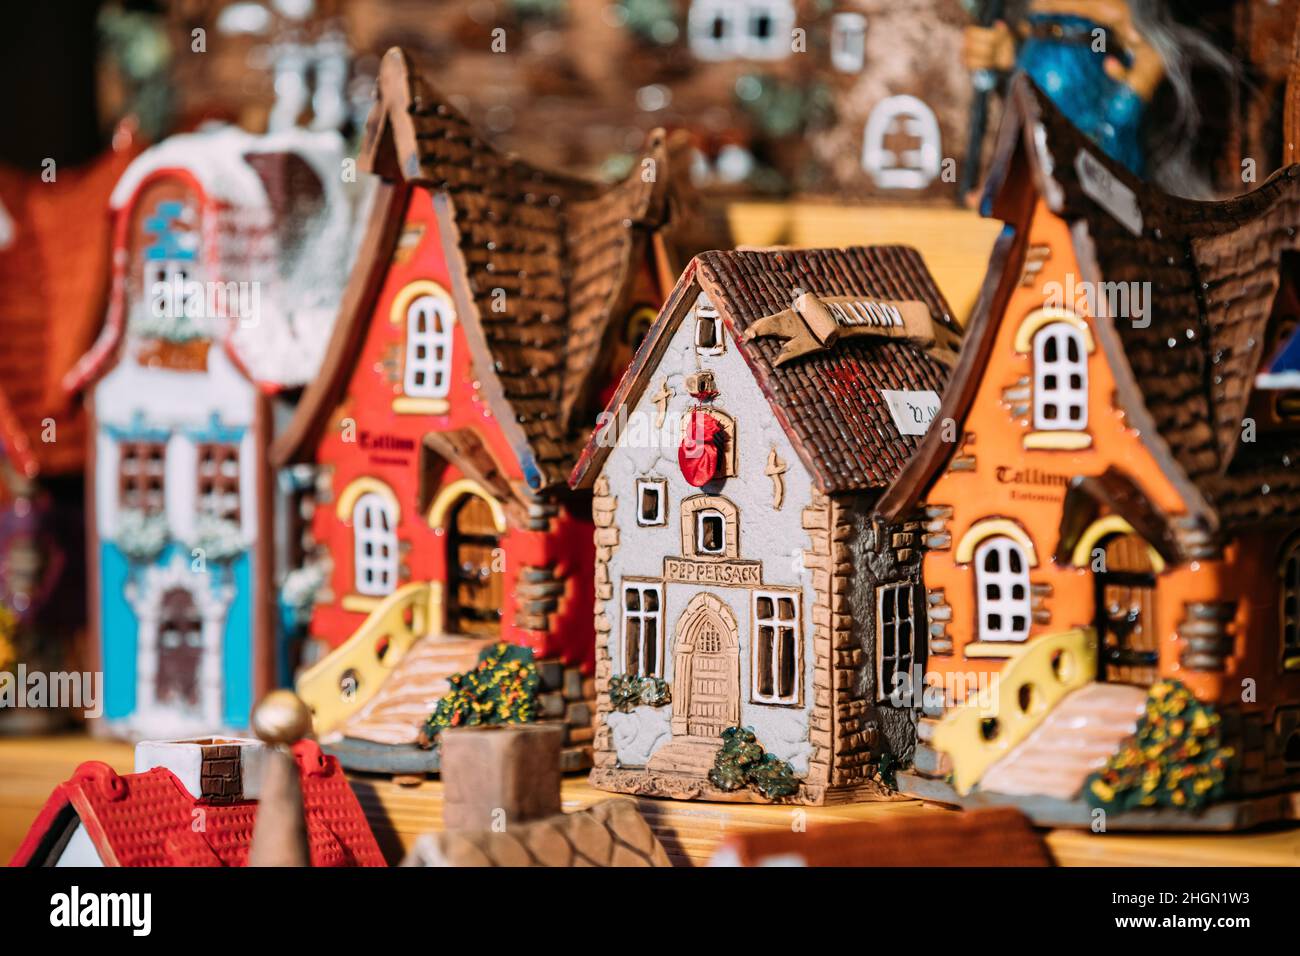 Souvenir tradizionali piccoli giocattoli casa al mercato europeo. Souvenir divertenti da Tallinn, Estonia, Europa Foto Stock